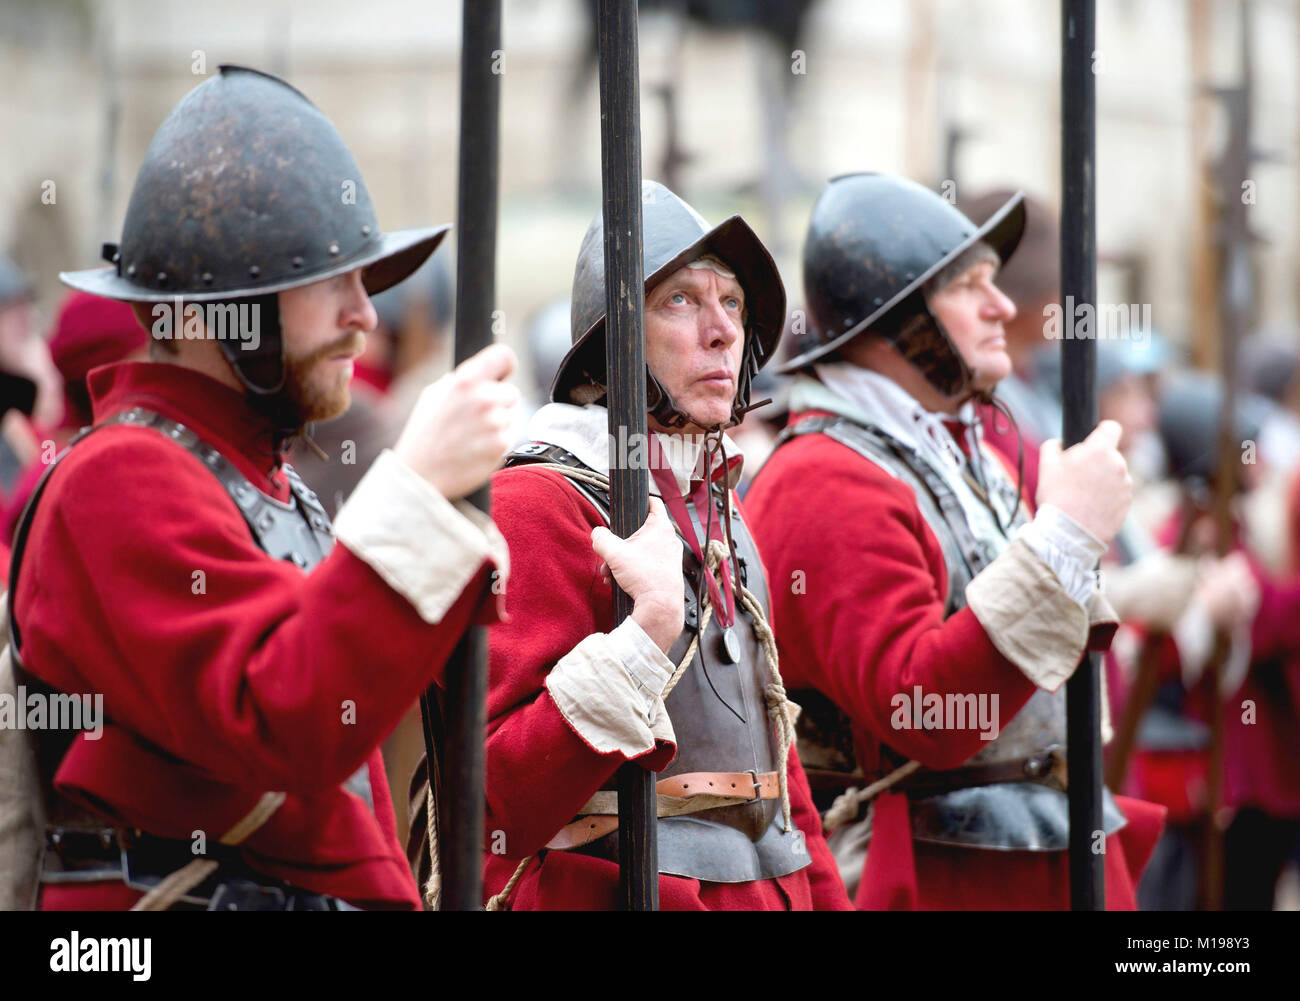 Les membres de la société la guerre civile prendre part à l'armée du roi marche annuelle et Parade, à Londres, qu'ils commémorent l'exécution de Charles Ier. Banque D'Images